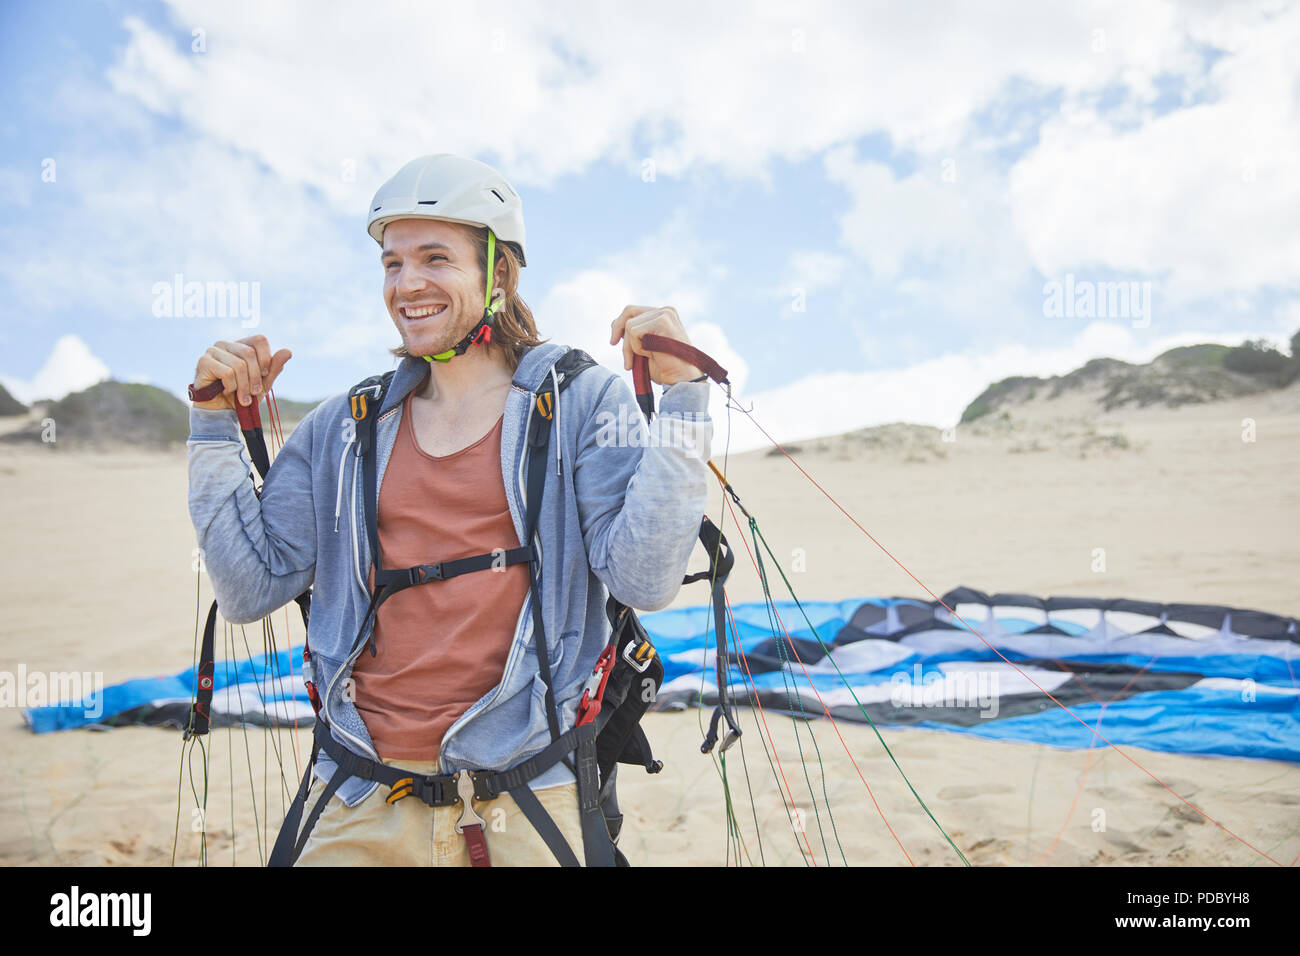 Lächelnd, zuversichtlich Gleitschirm mit Fallschirm am Strand Stockfoto